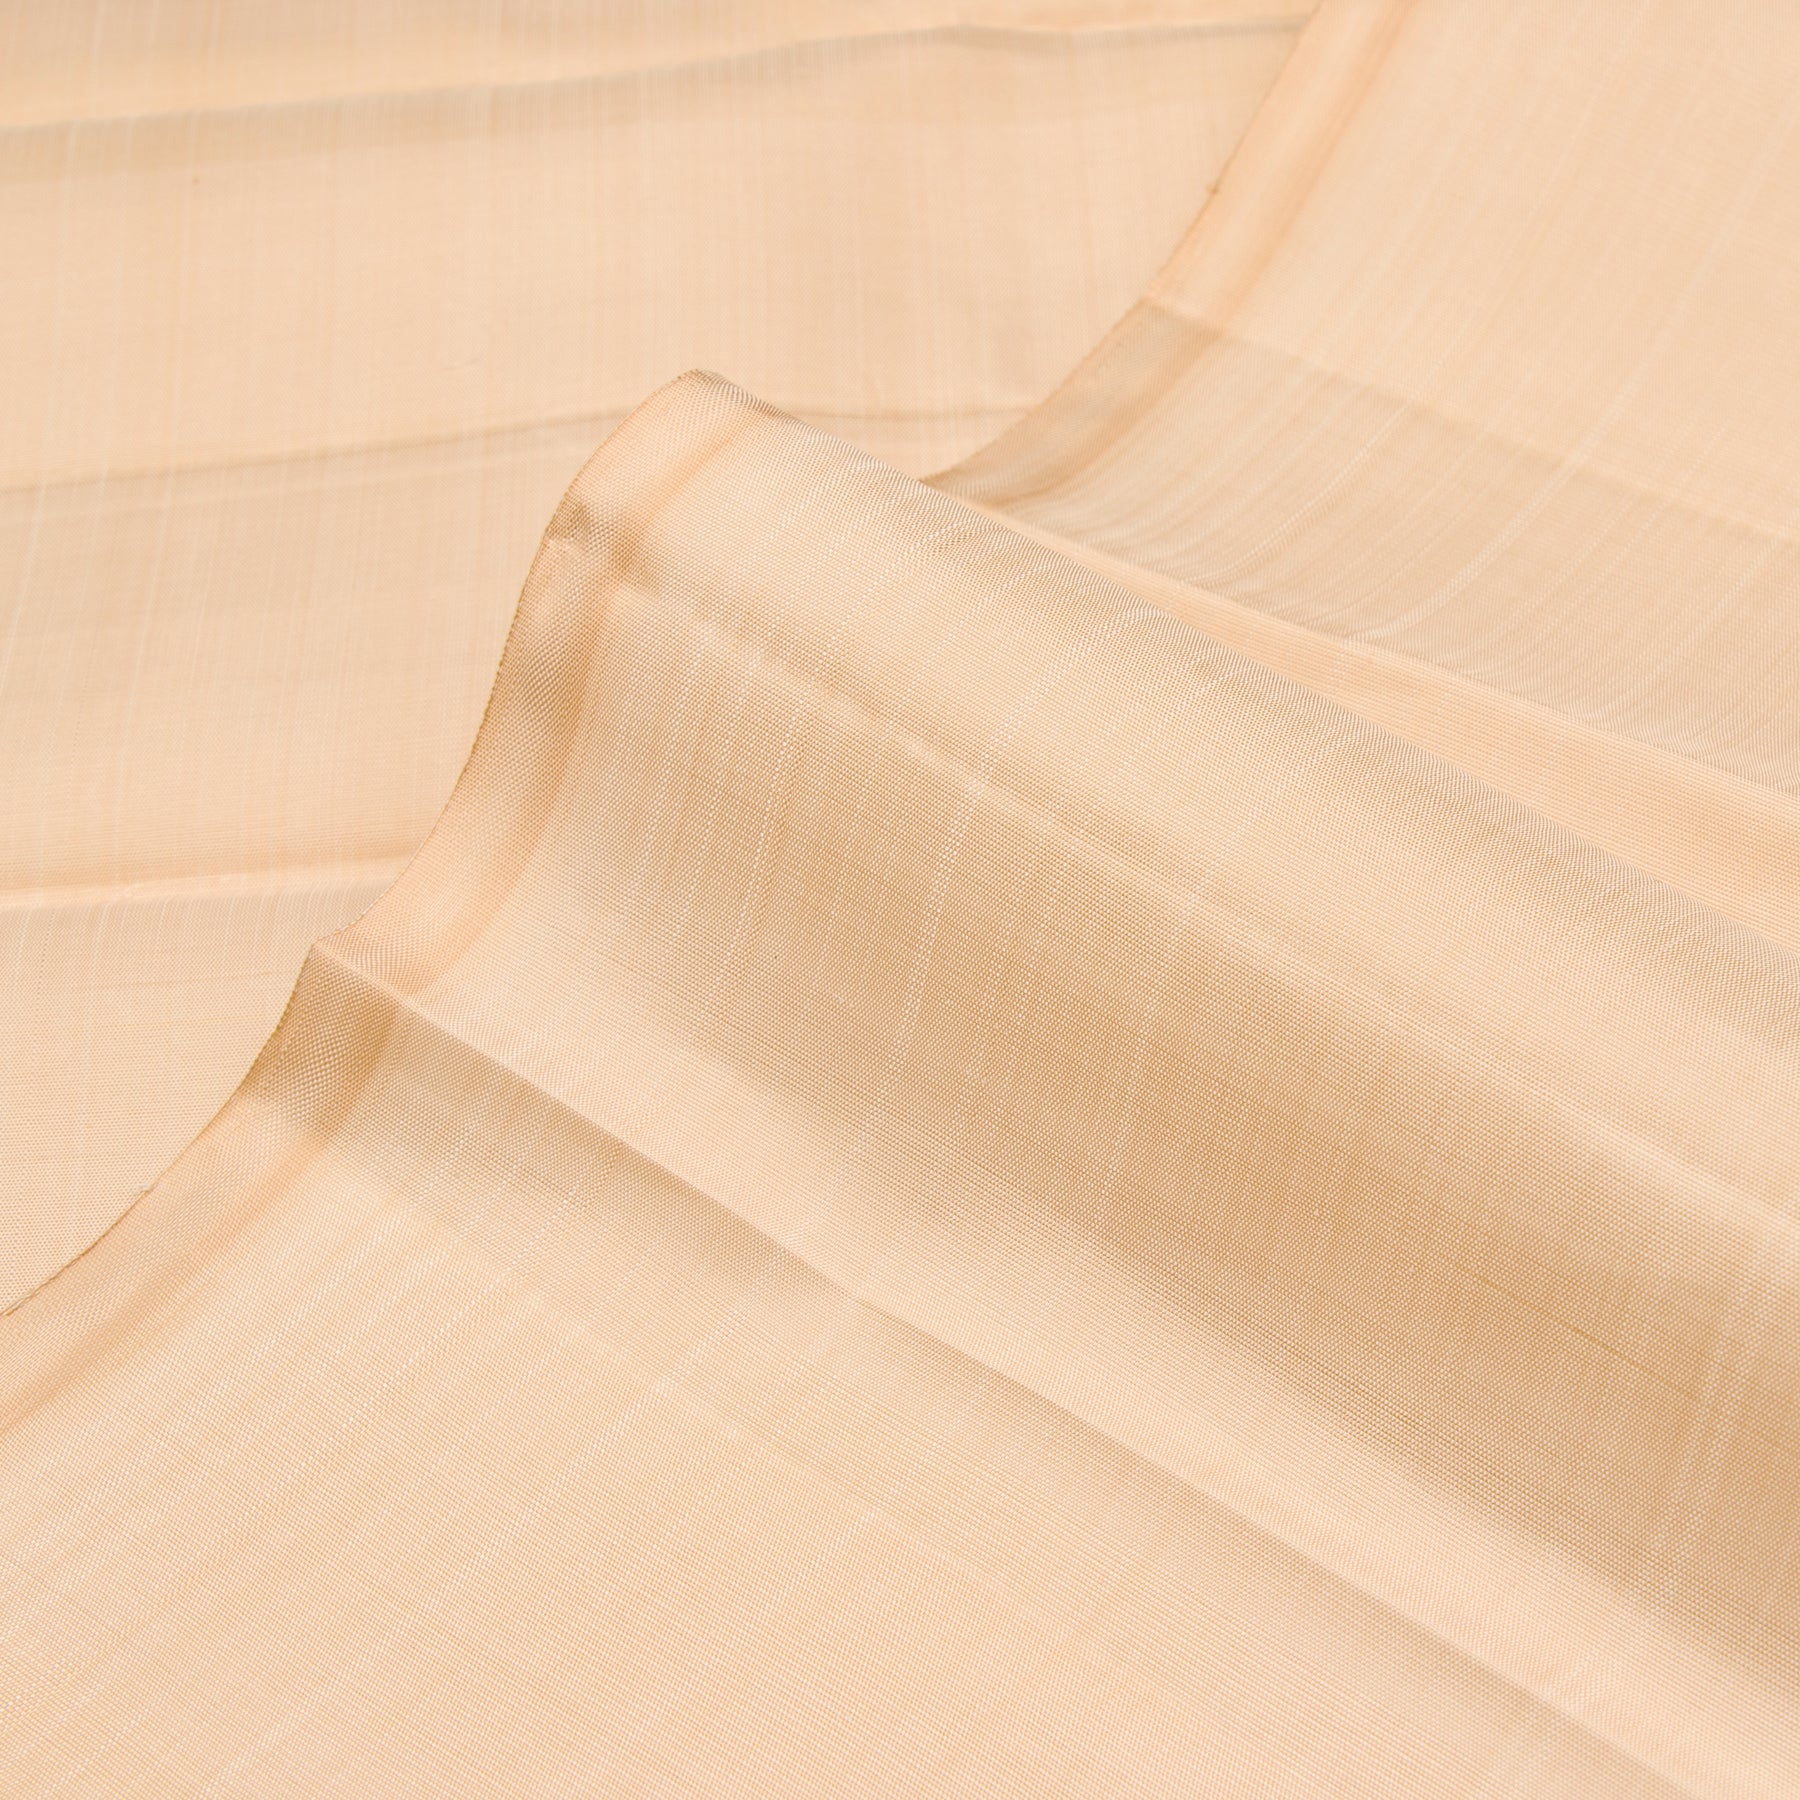 Kanakavalli Kanjivaram Silk Fabric Length 23-110-HF001-08381 - Profile View